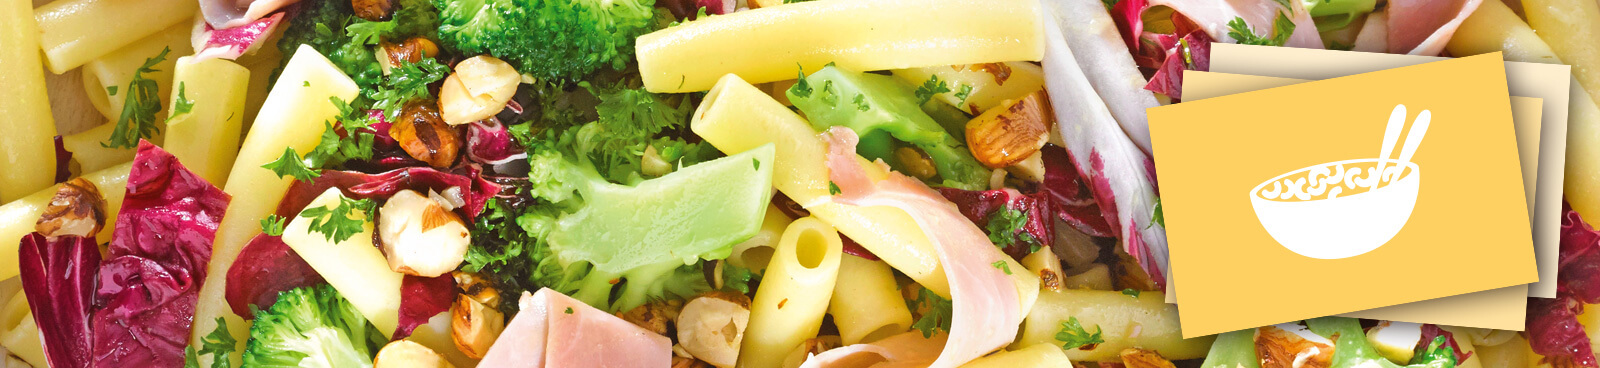 Leckerer Nudelsalat von Tress mit frischem Gemüse, Nüssen und Schinken